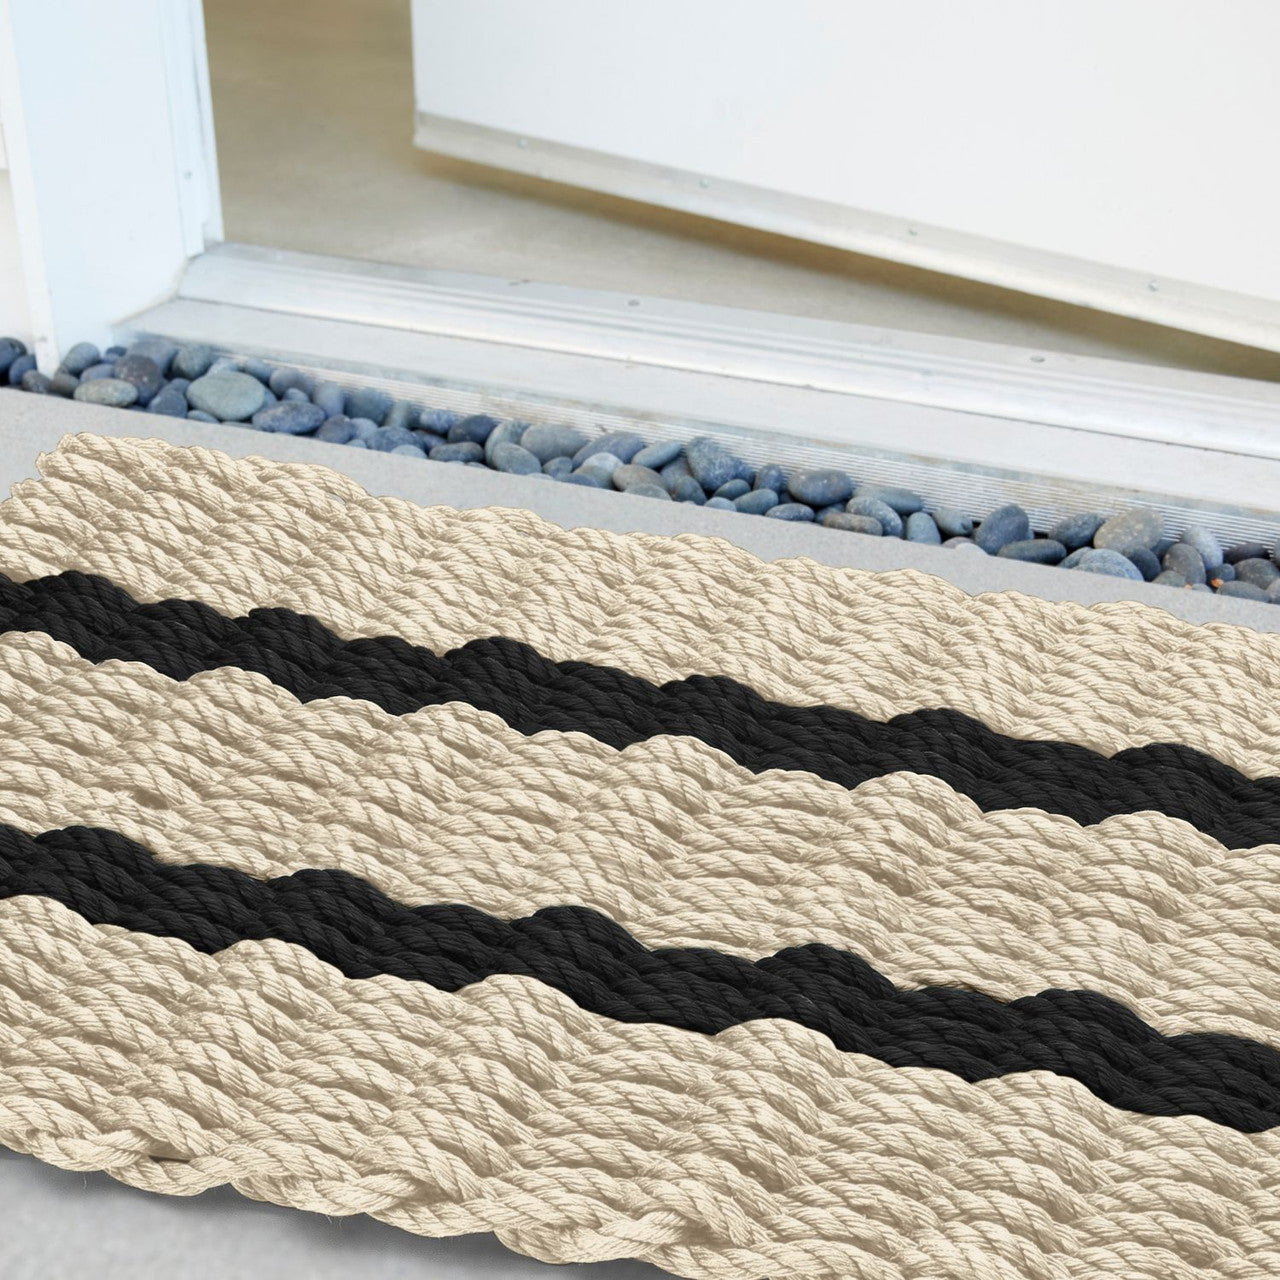 Rockport Rope Doormats 2038374 Indoor and Outdoor Doormat, 20 x 38, Black